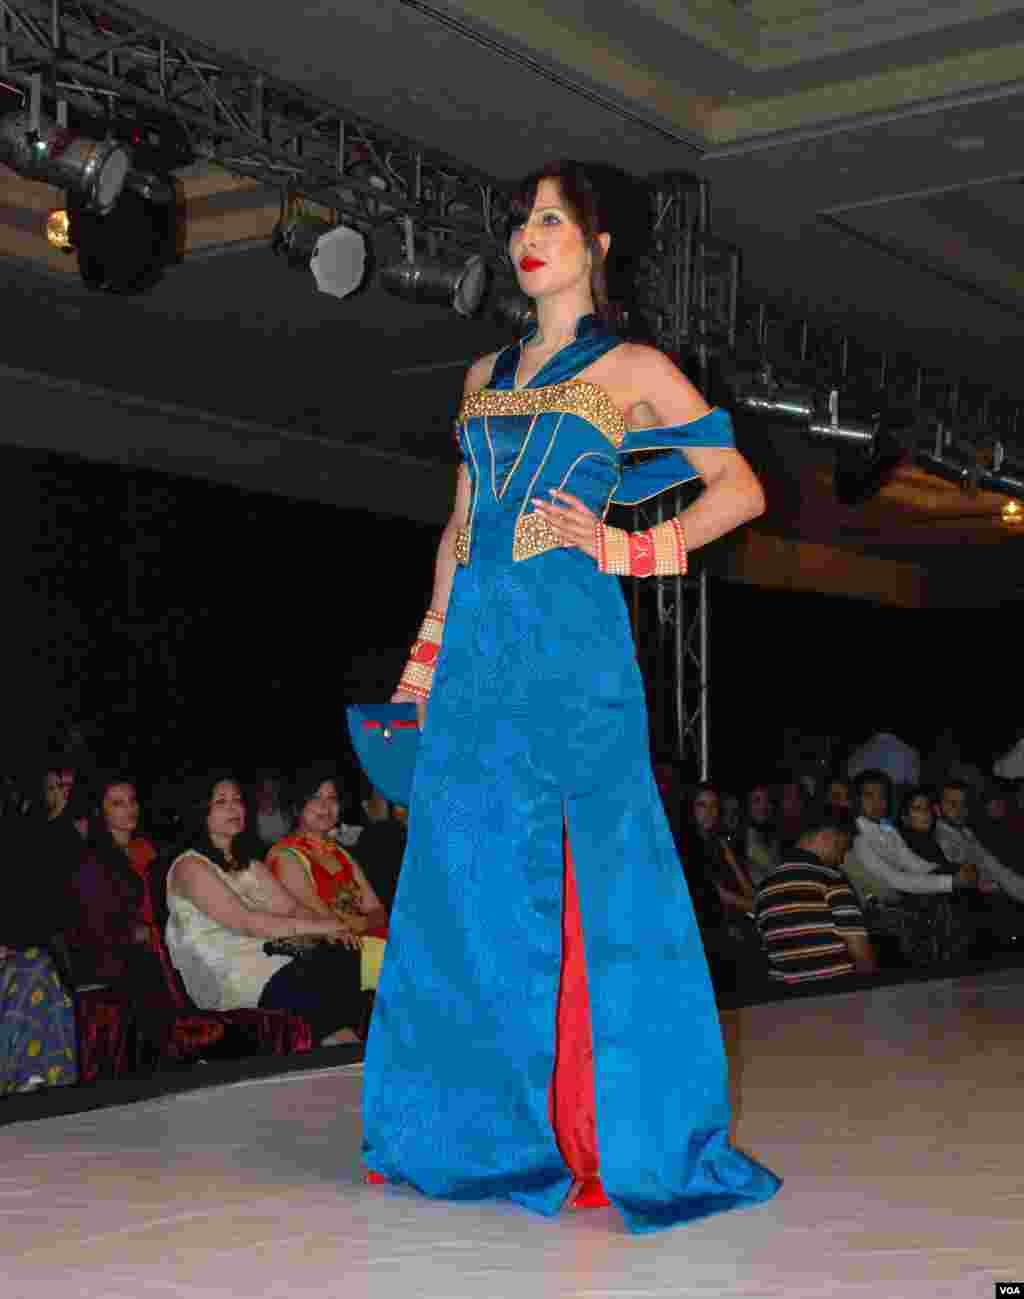 اس  فیشن ویک میں پاکستان کے بیشتر ڈیزائنرز سمیت غیر ملکی ممبران  نے بھی شرکت کی۔